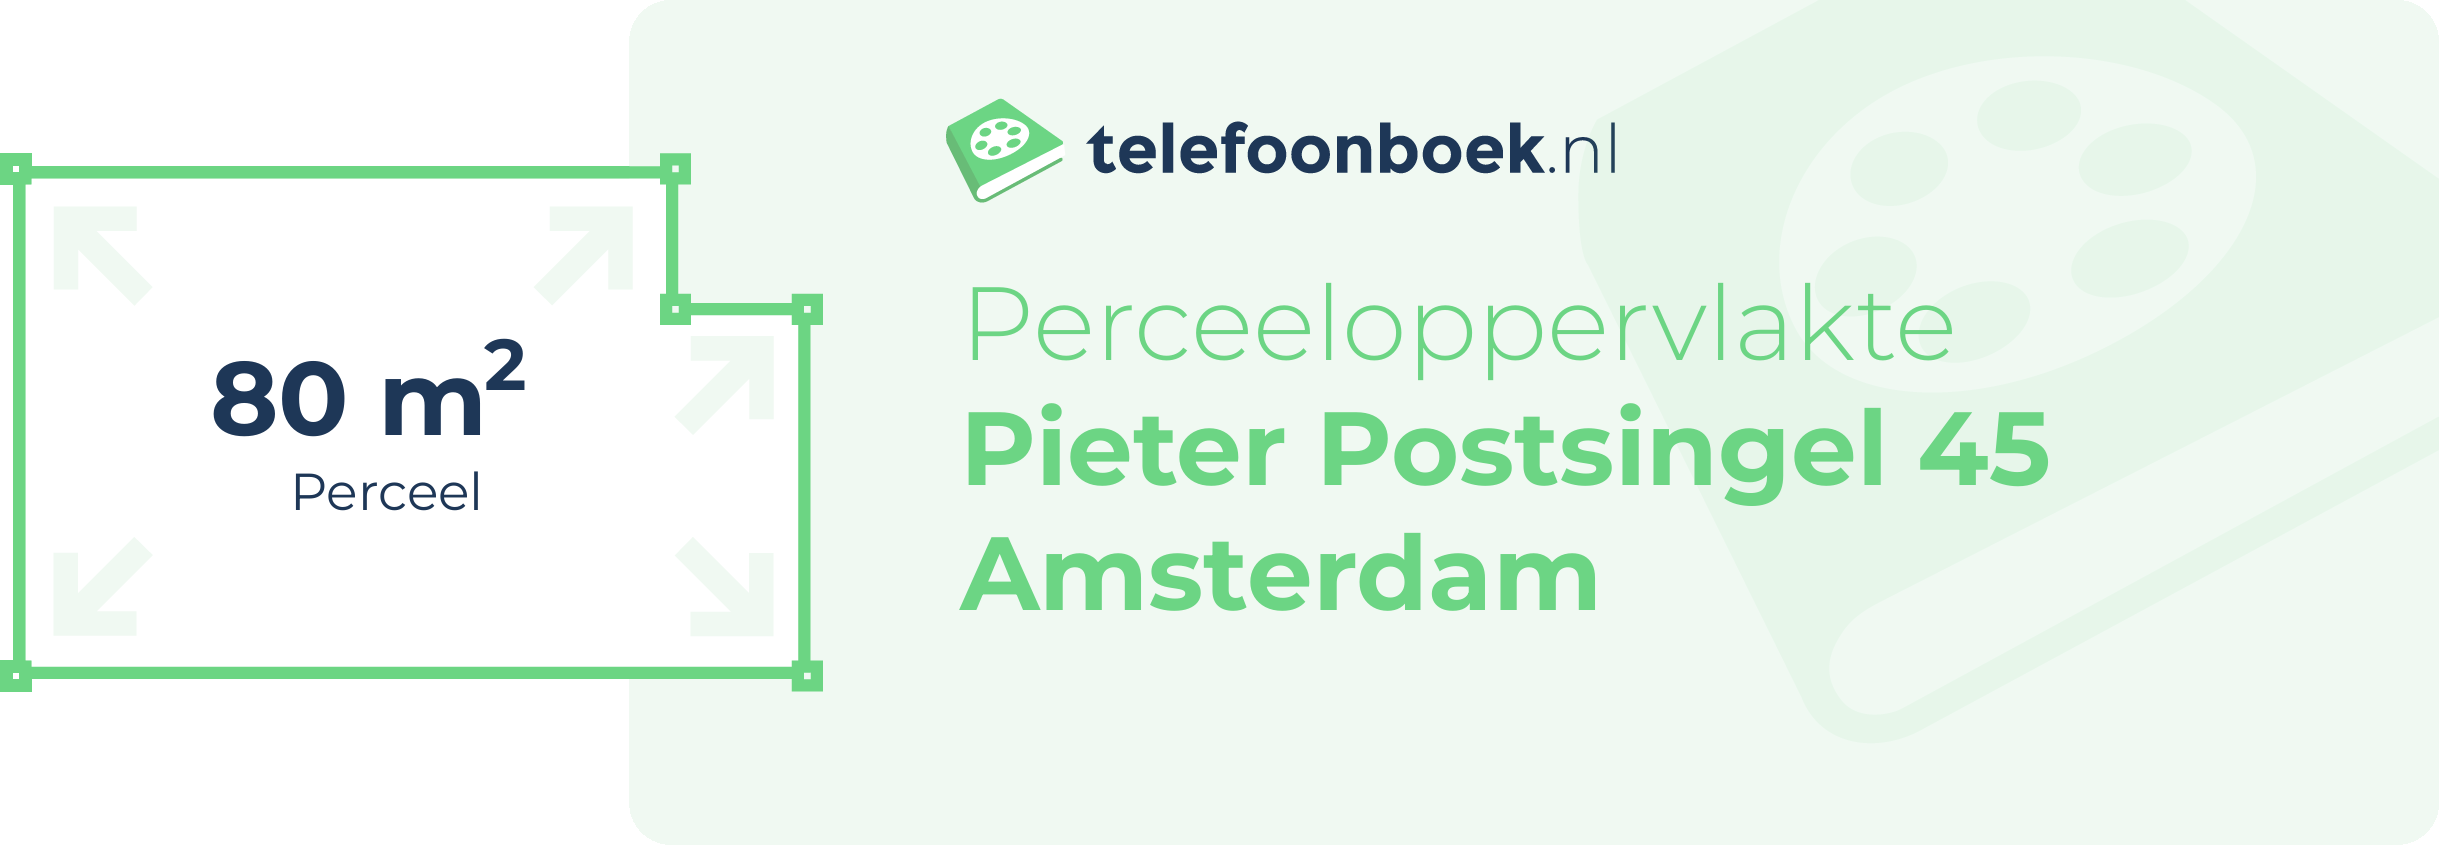 Perceeloppervlakte Pieter Postsingel 45 Amsterdam